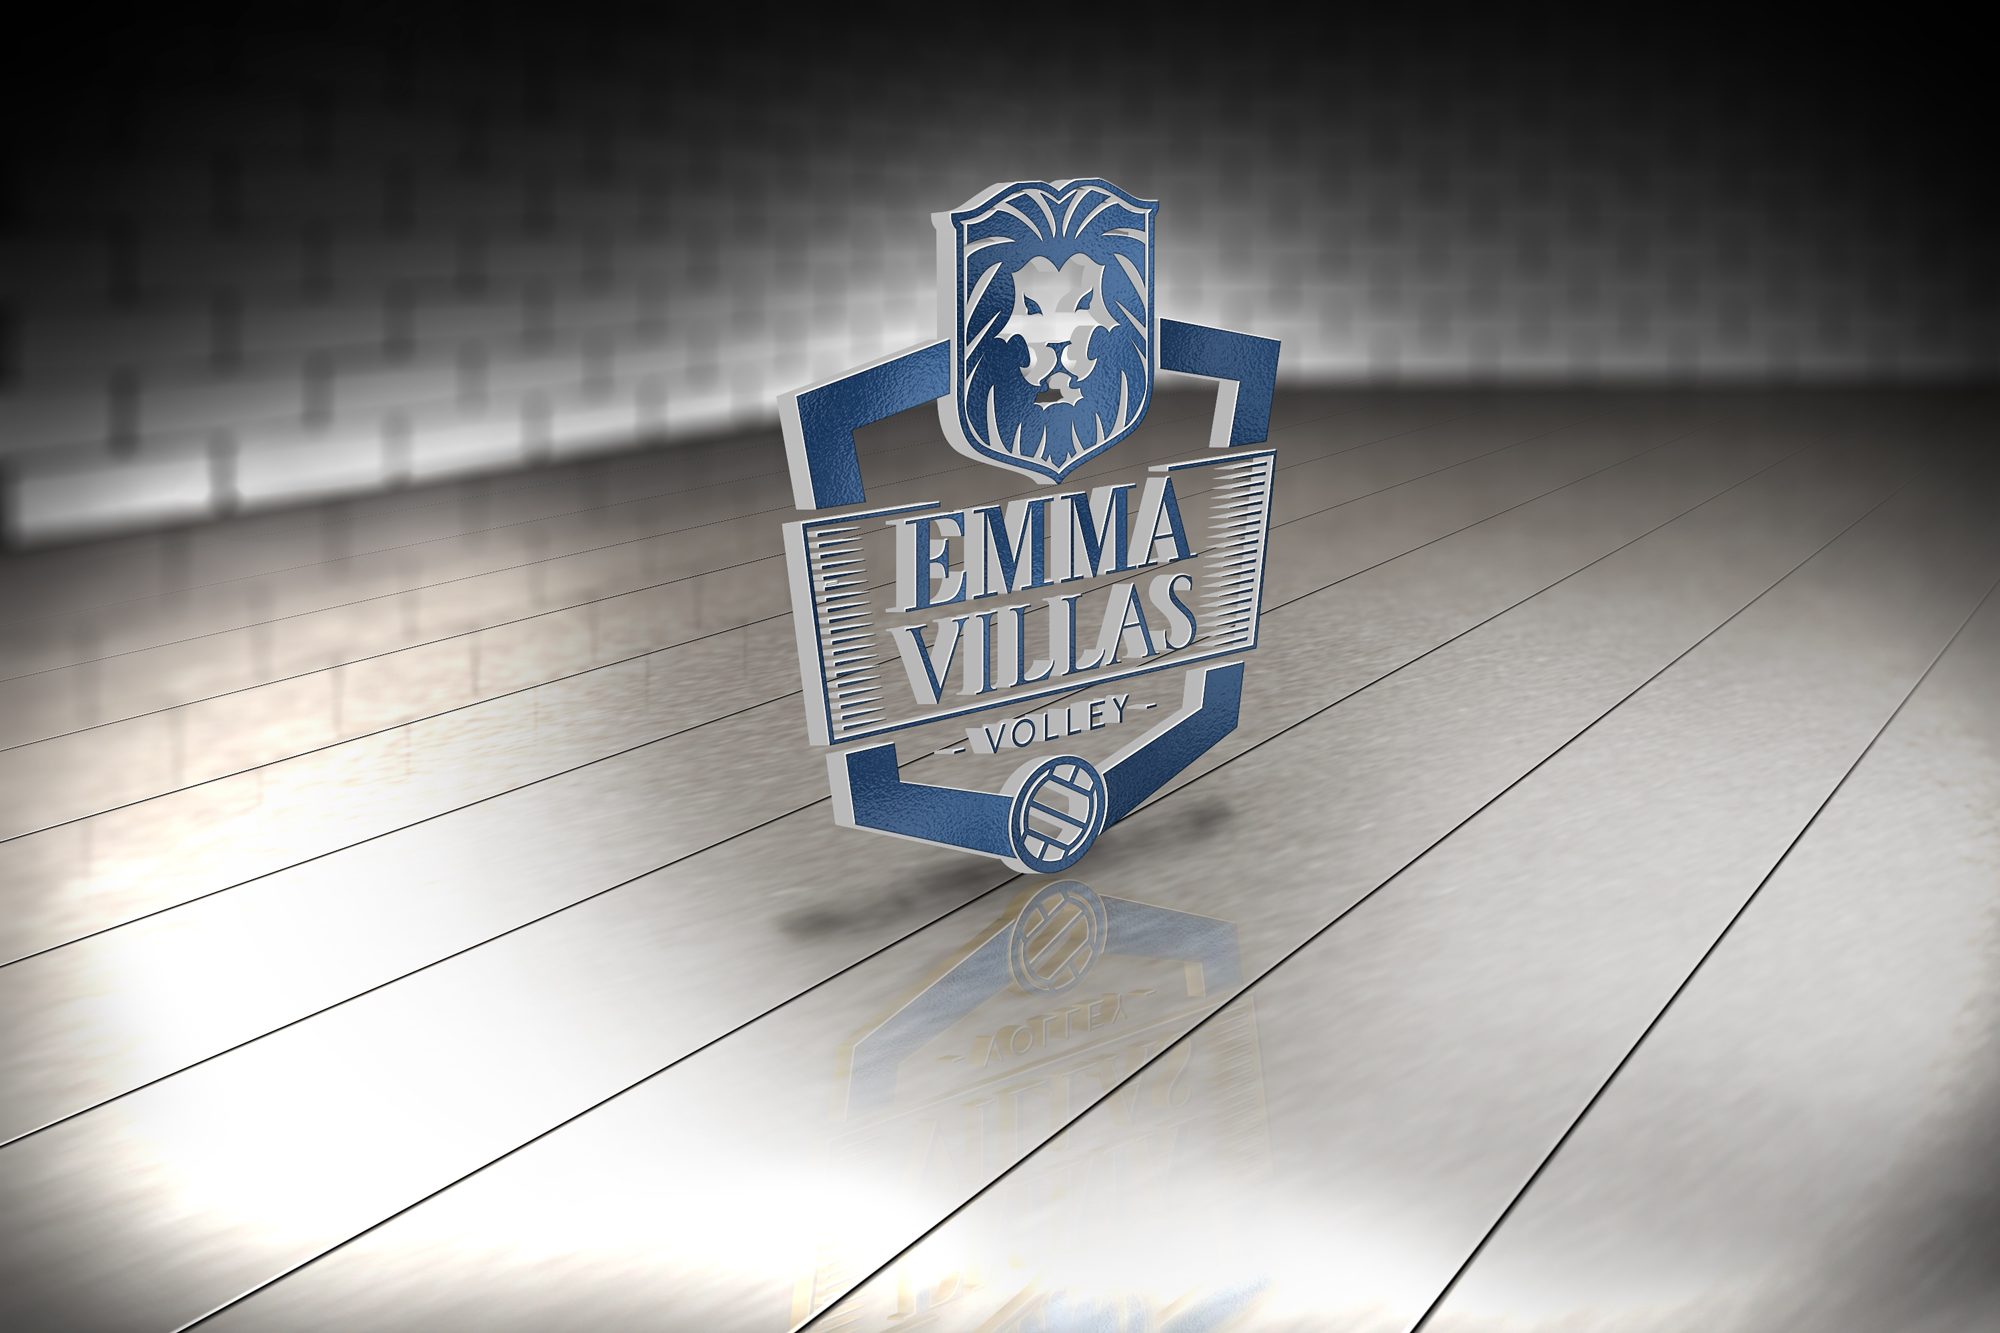 emma-villas-volley-logo